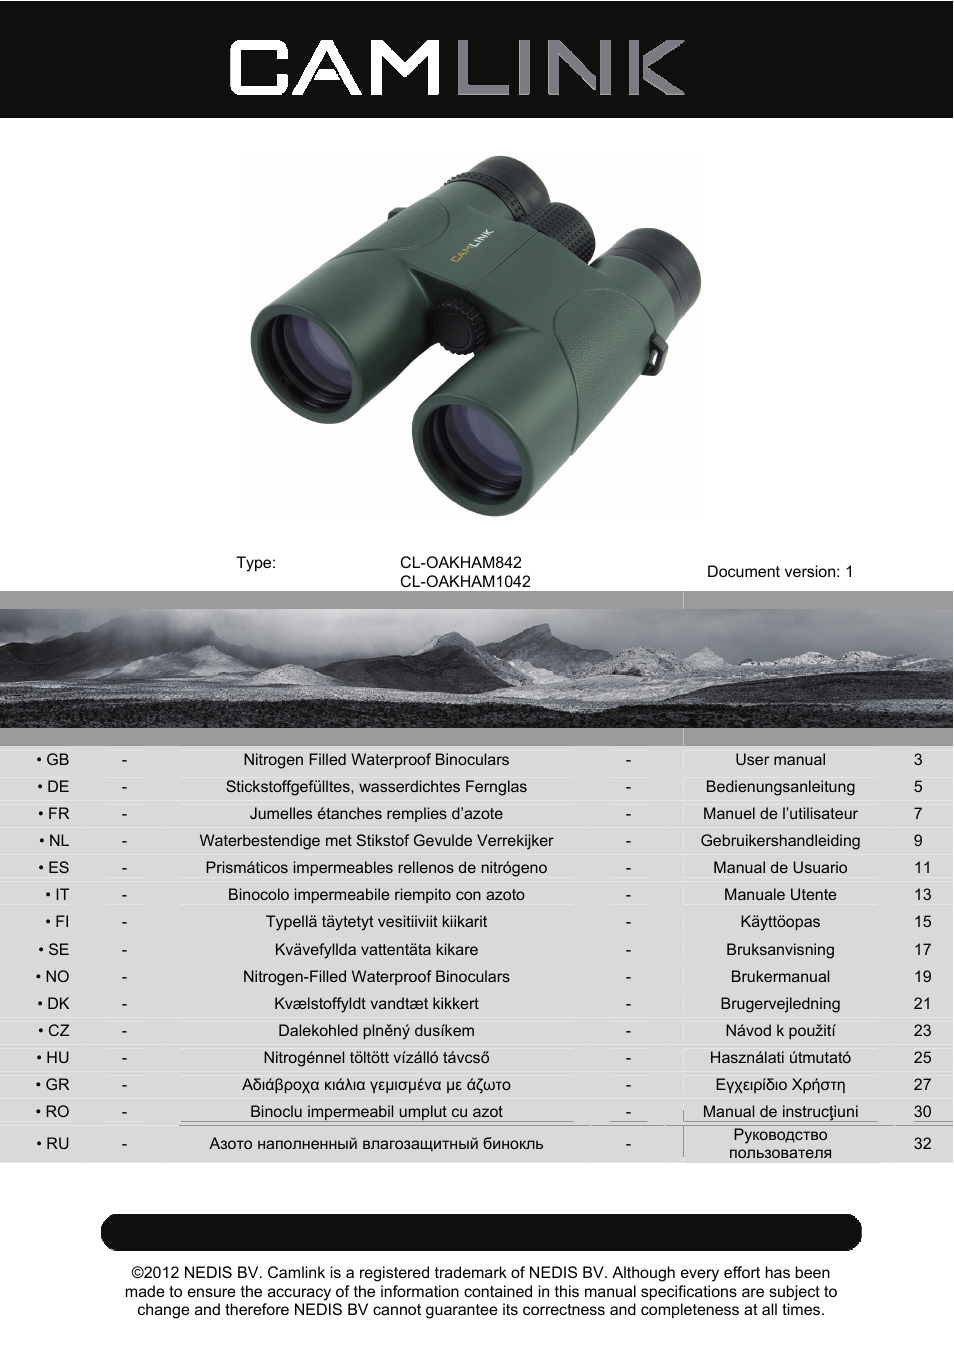 10x42 mm binoculars